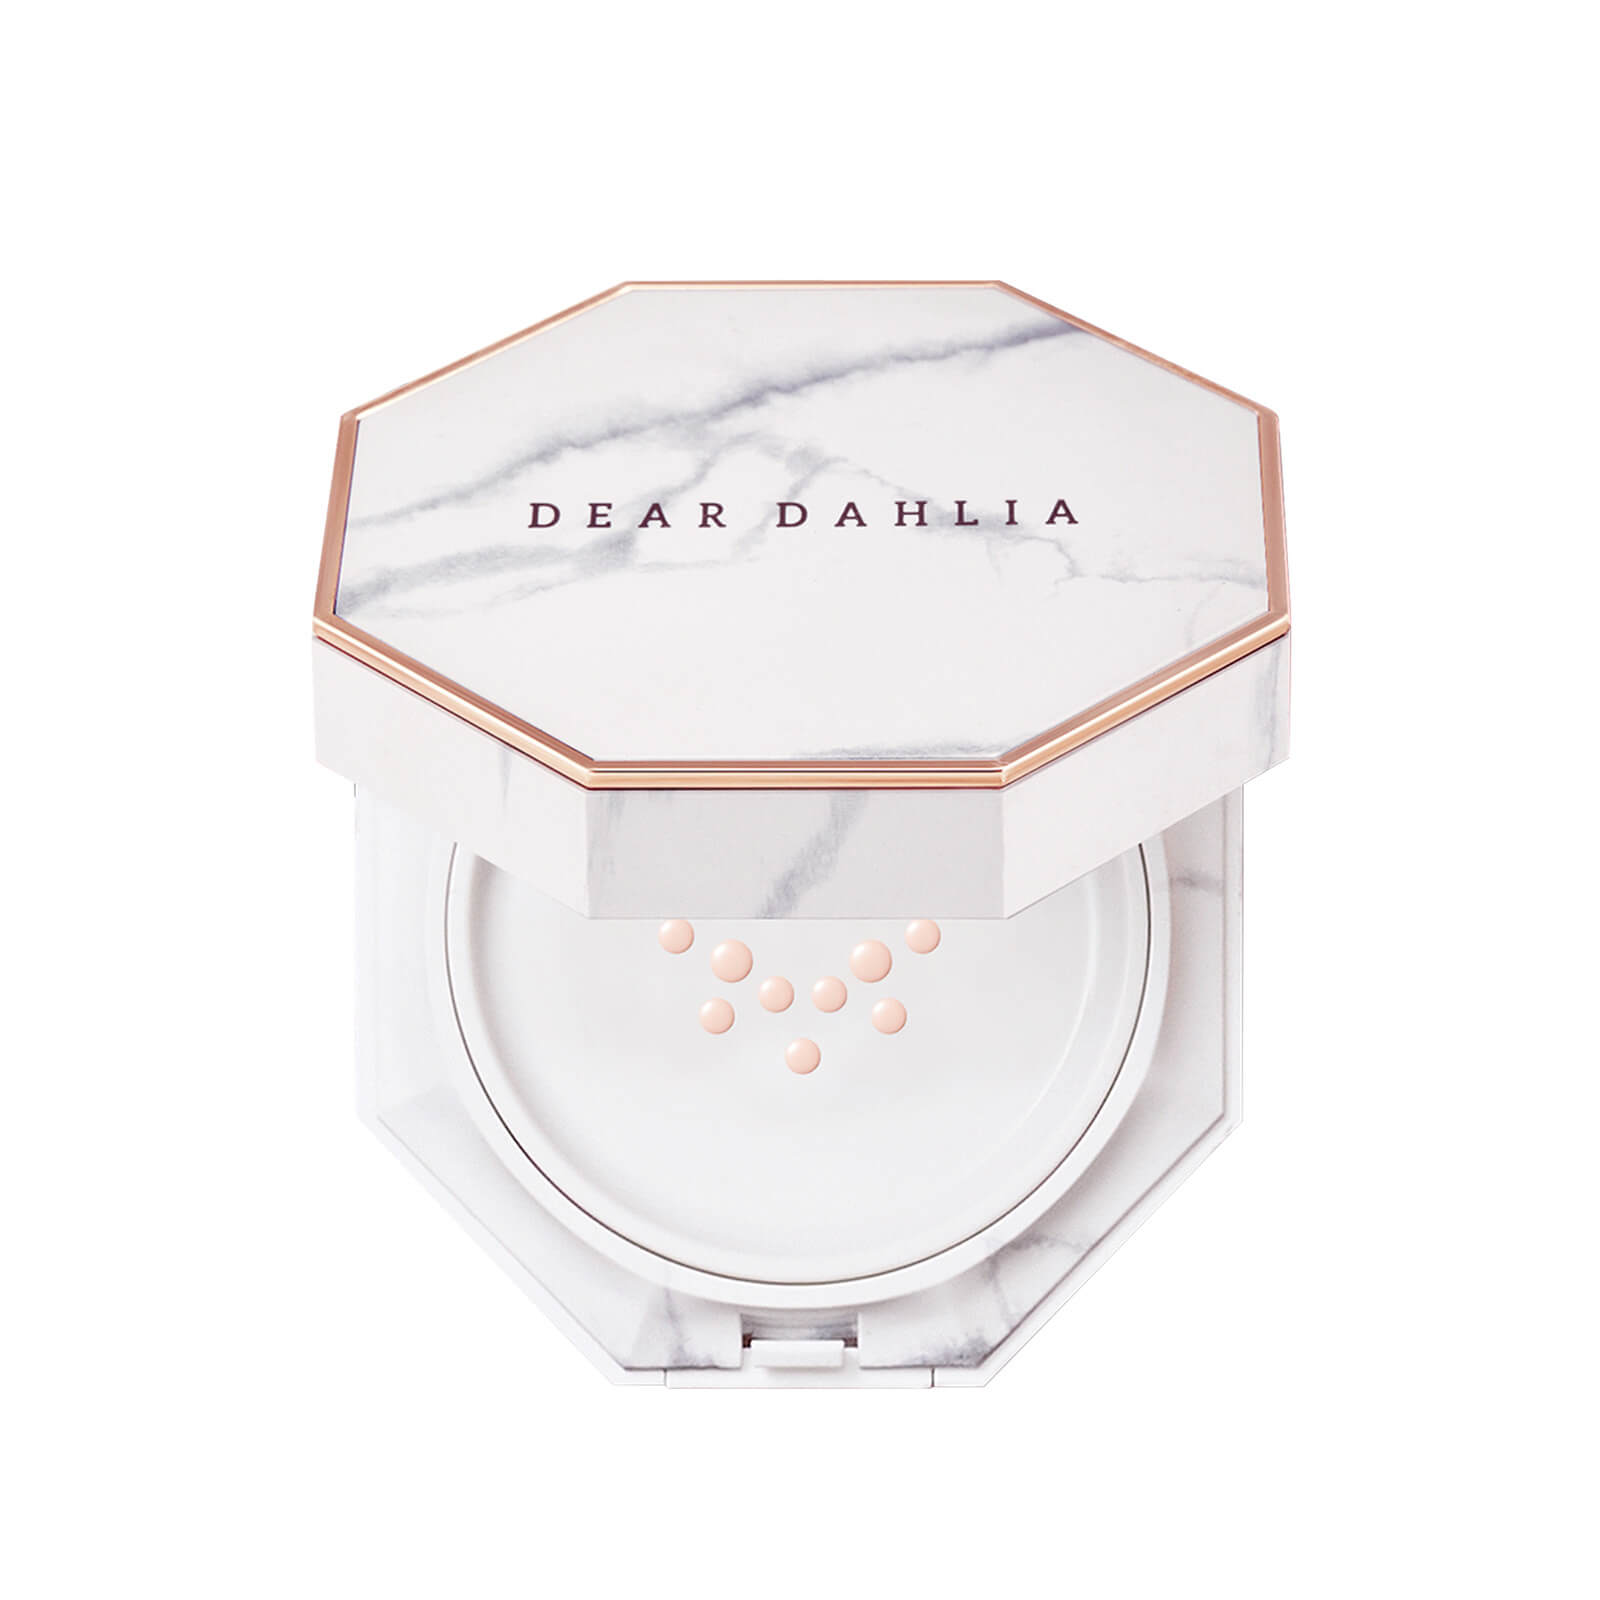 Dear Dahlia Skin Paradise Blooming Cushion 14ml (Various Shades) - Peach Ivory